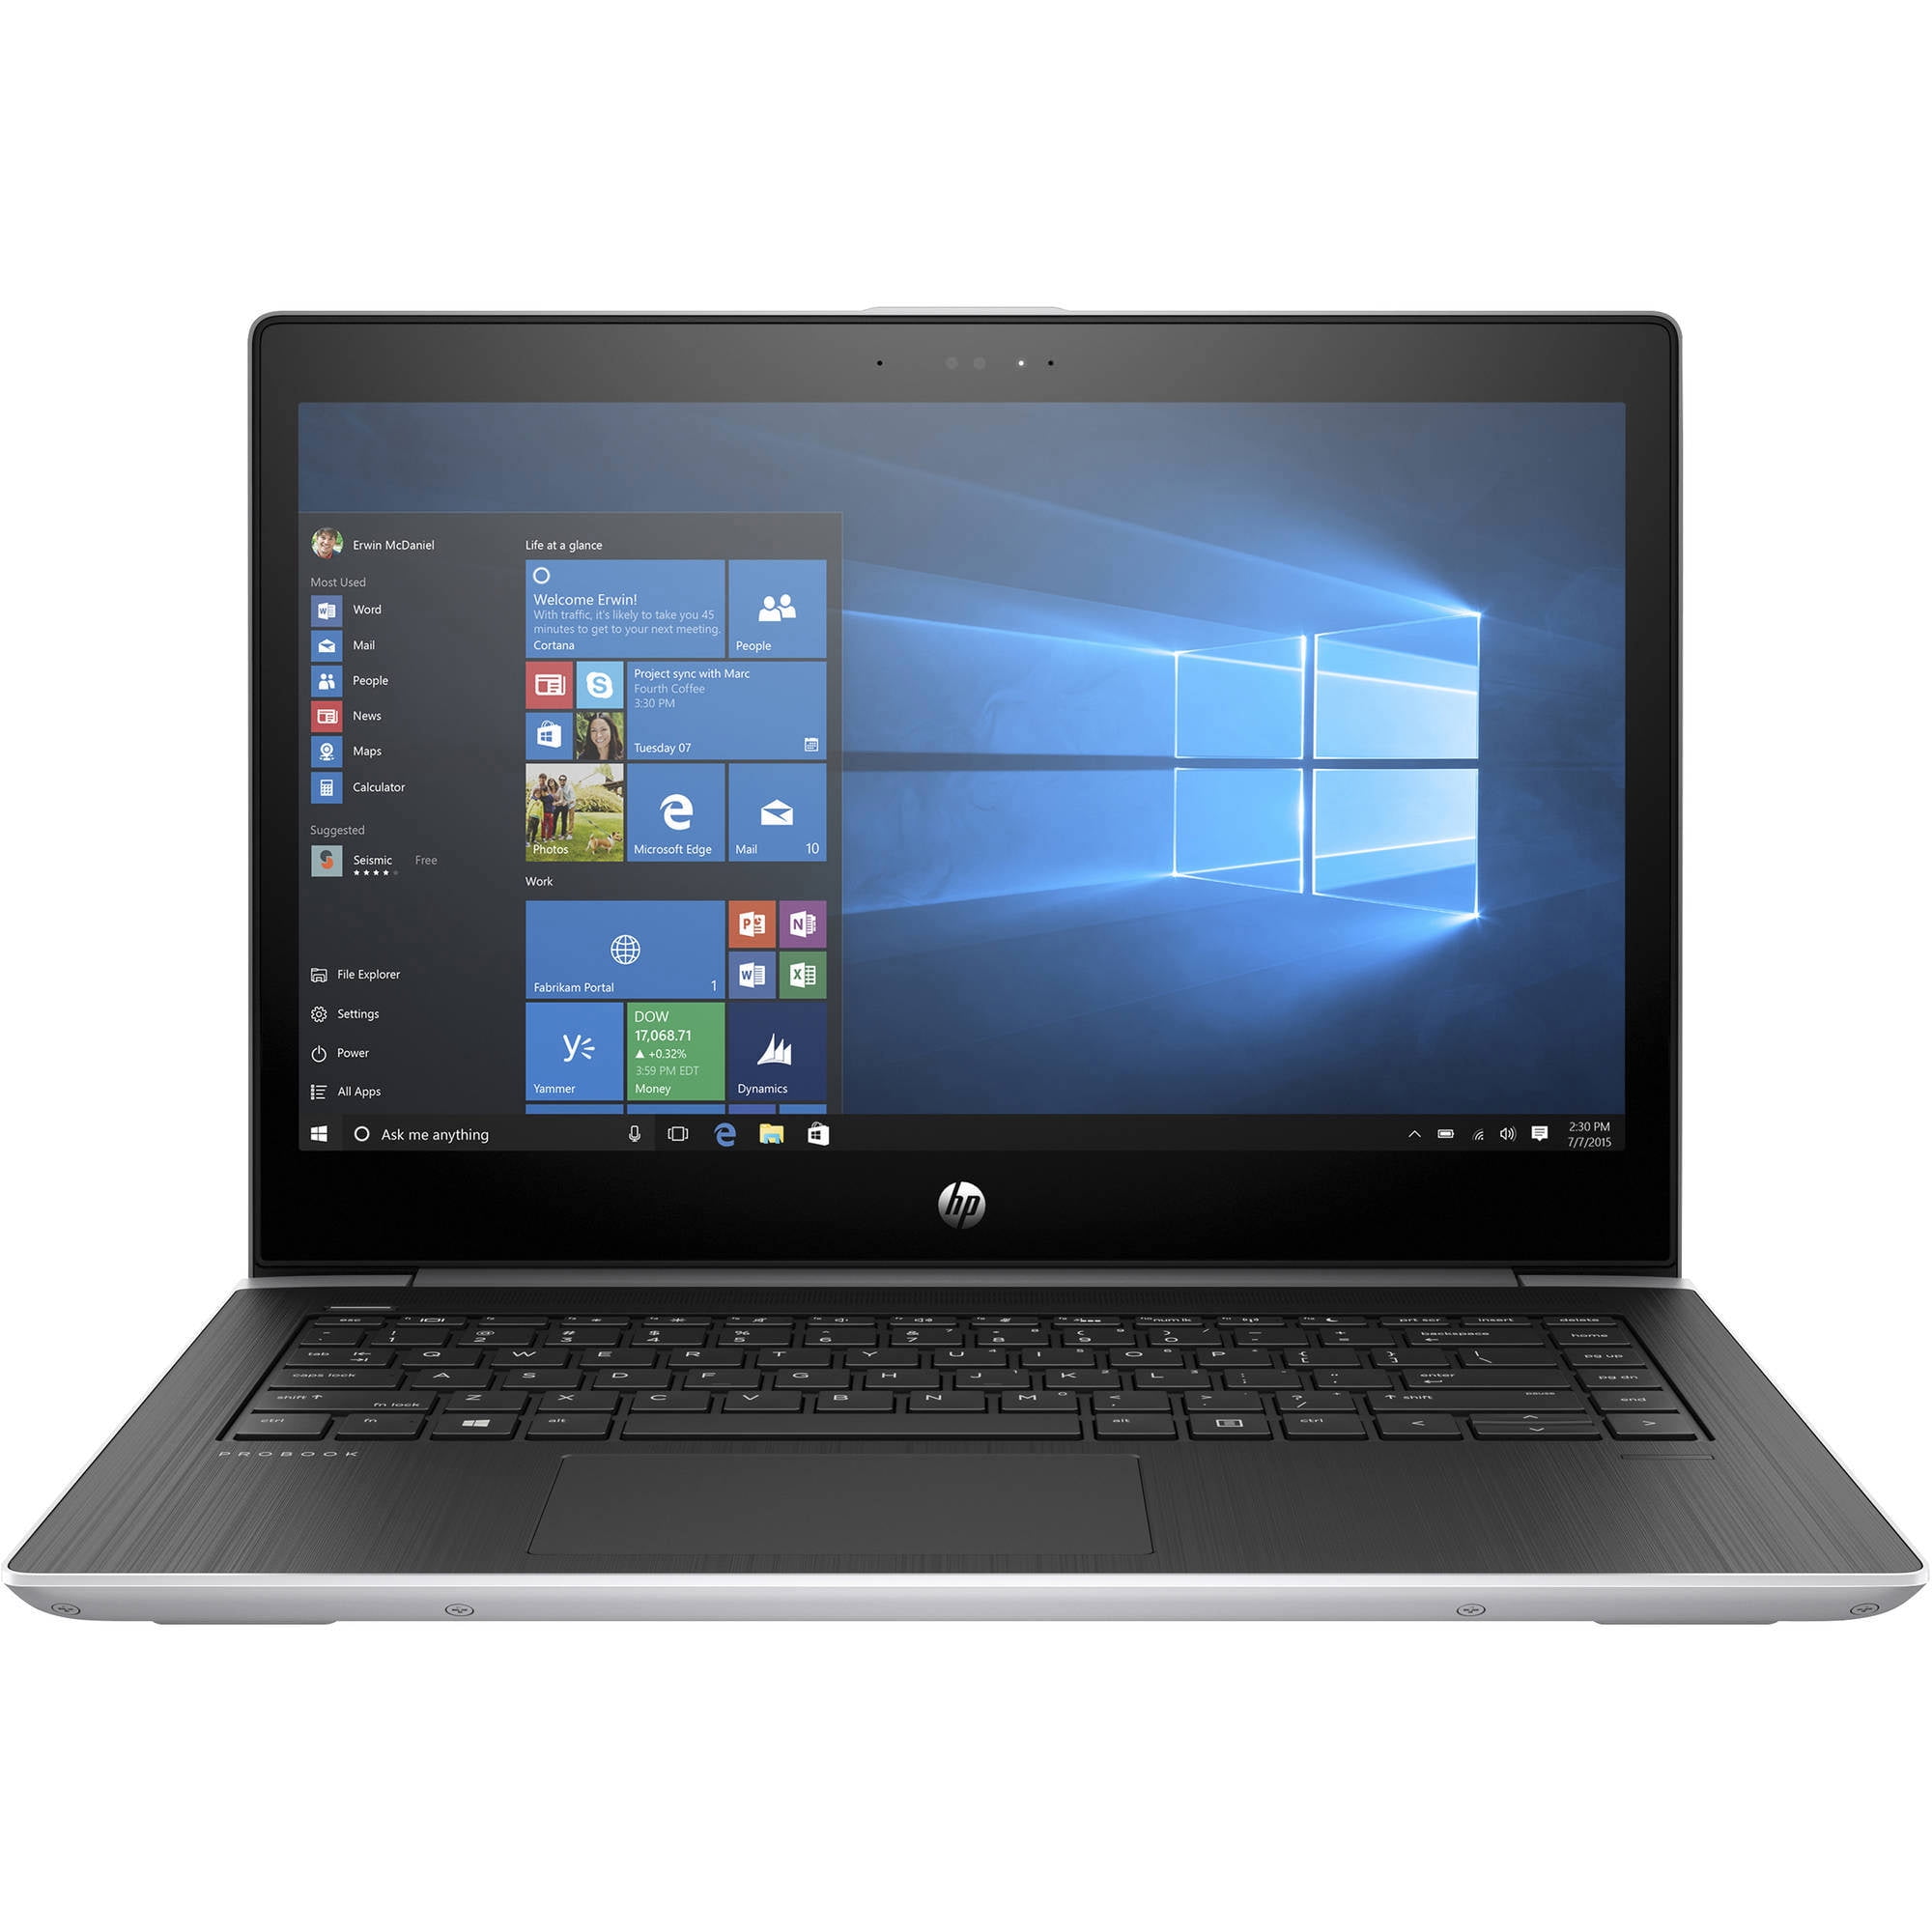 HP ProBook 450 G5 Notebook PC (2ST02UT) - Walmart.com